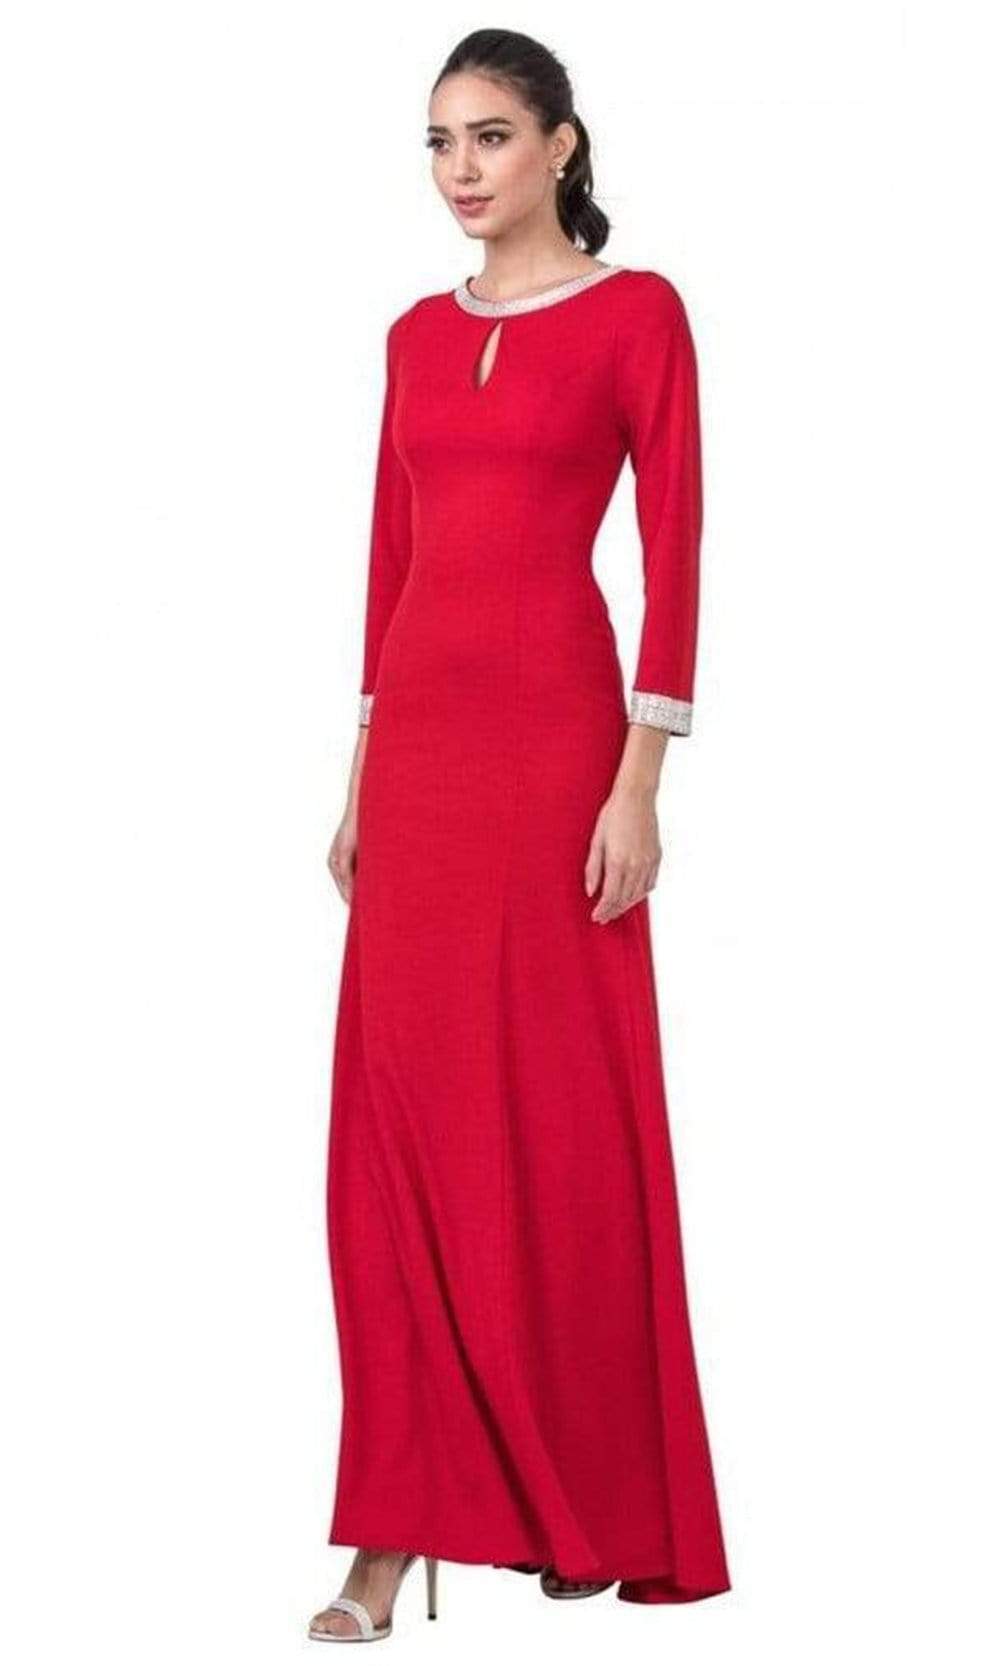 Aspeed Design - D374 Jewel-Trimmed Long Sleeve Dress
